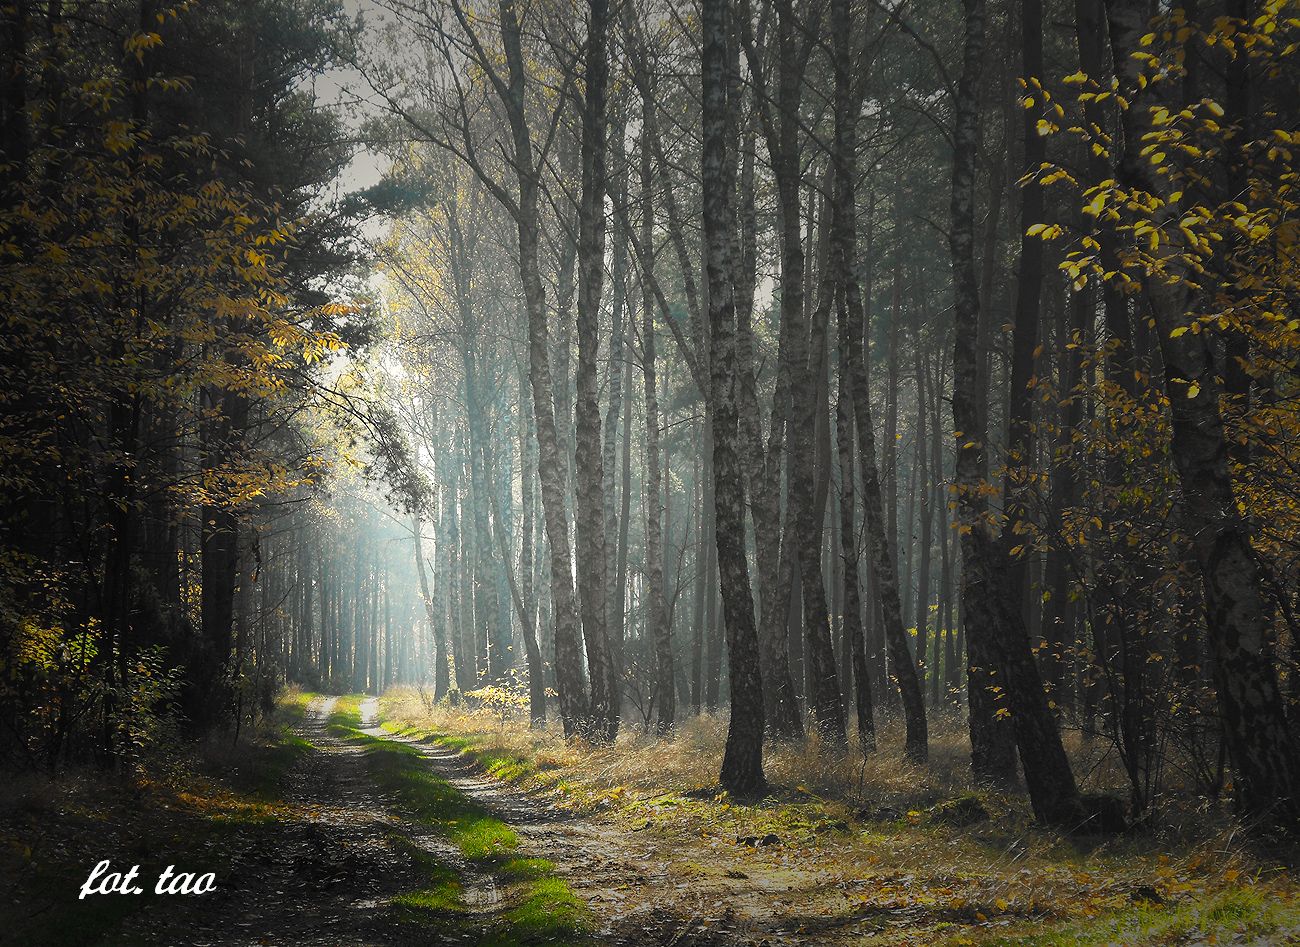 Leśna droga w okolicy Szczutowa, listopad 2013 r.